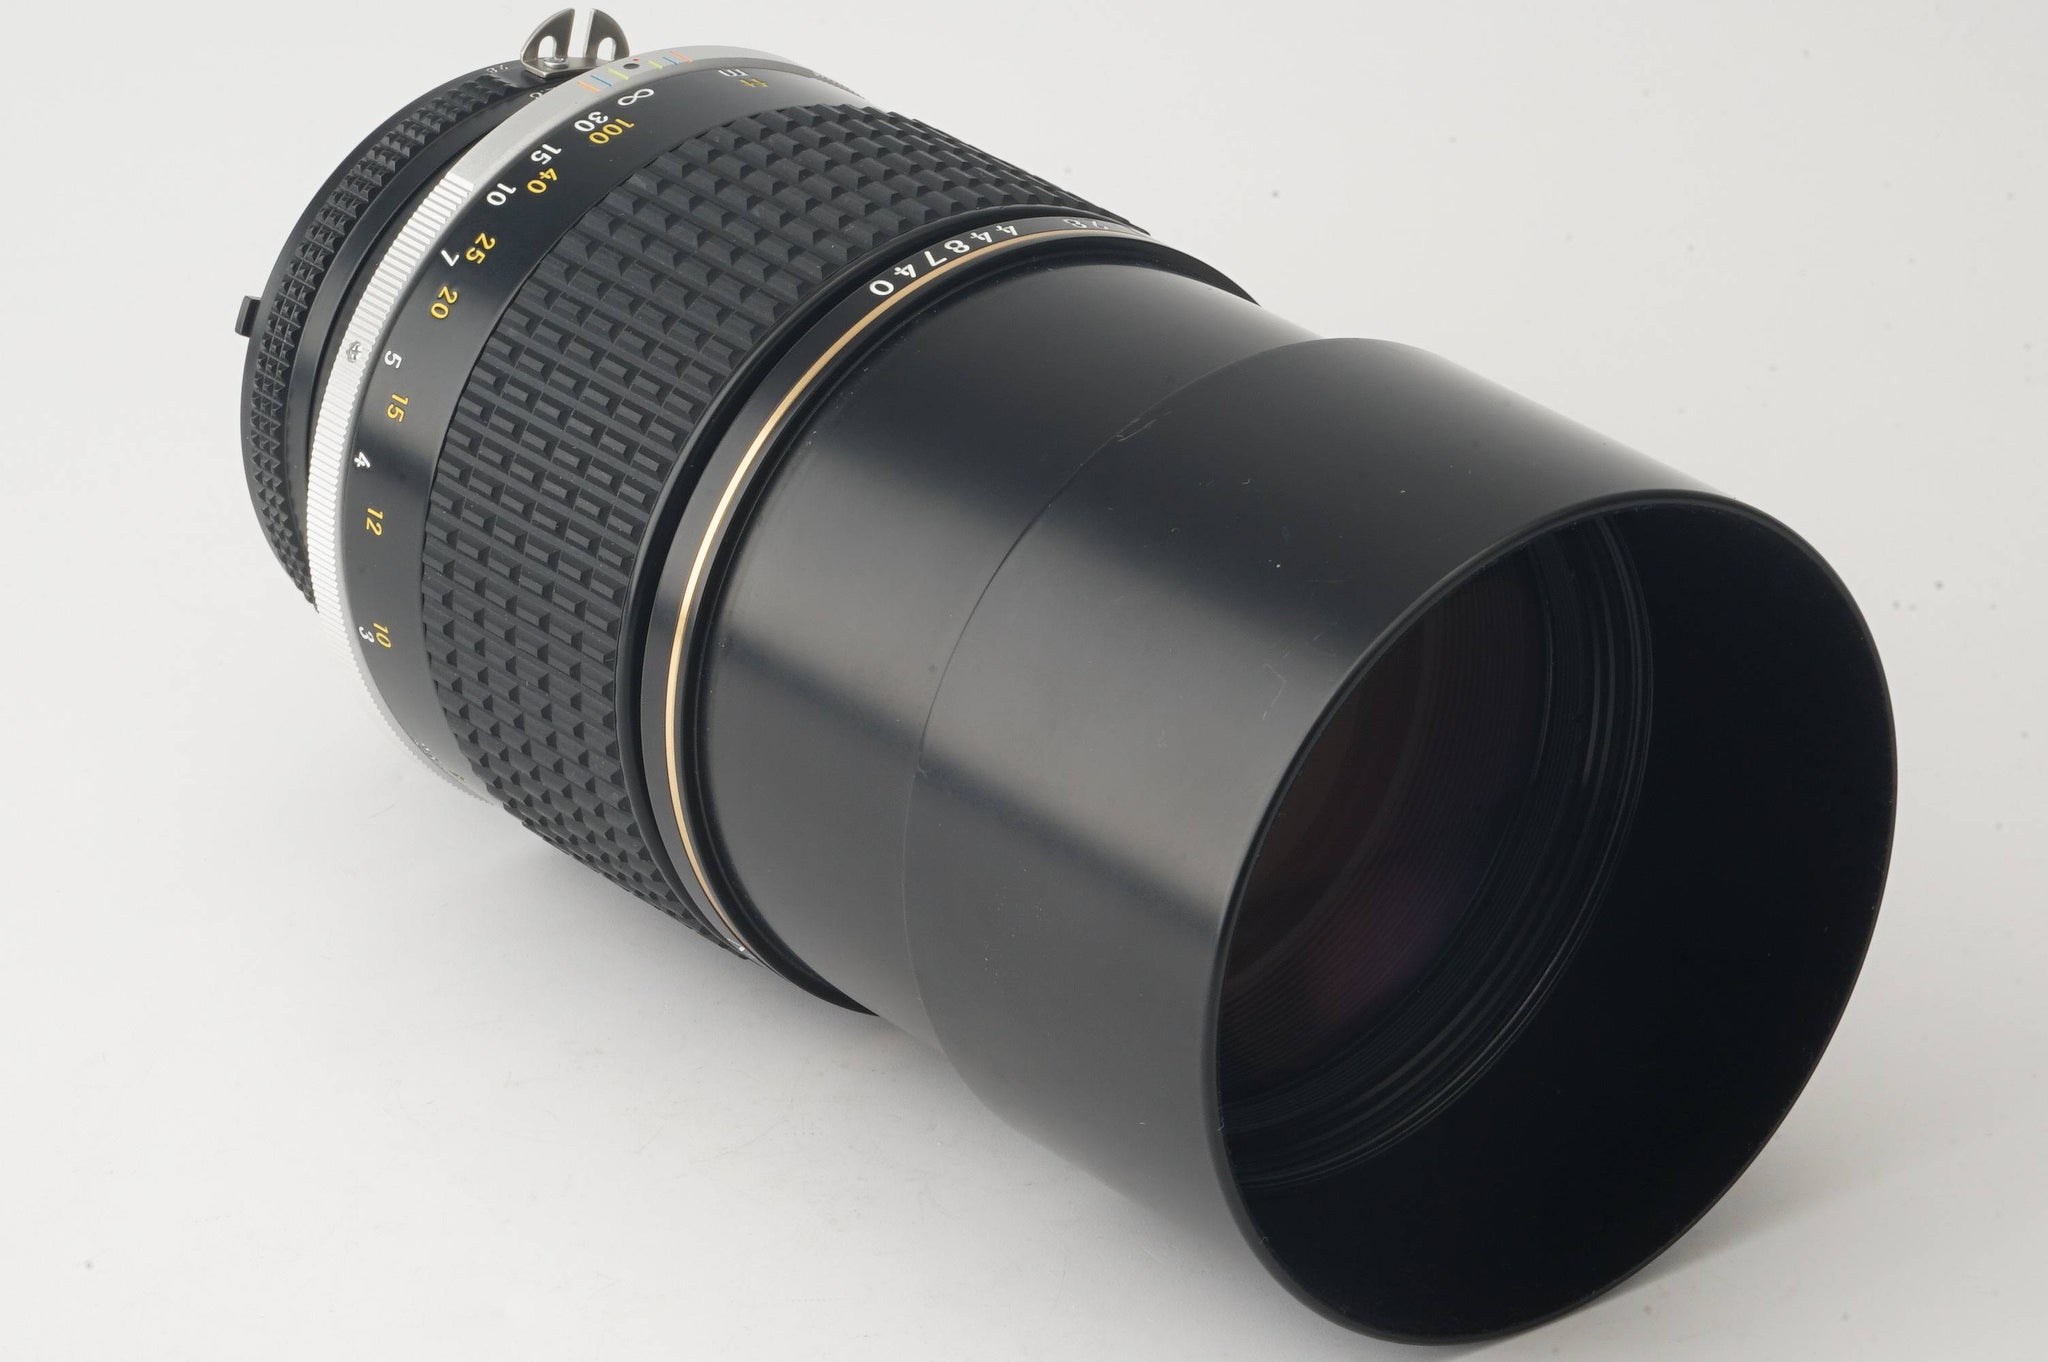 【スポーツにも】 ニコン Ai-s Nikkor ED 180mm F2.8-レンズ構成EDガラス採用